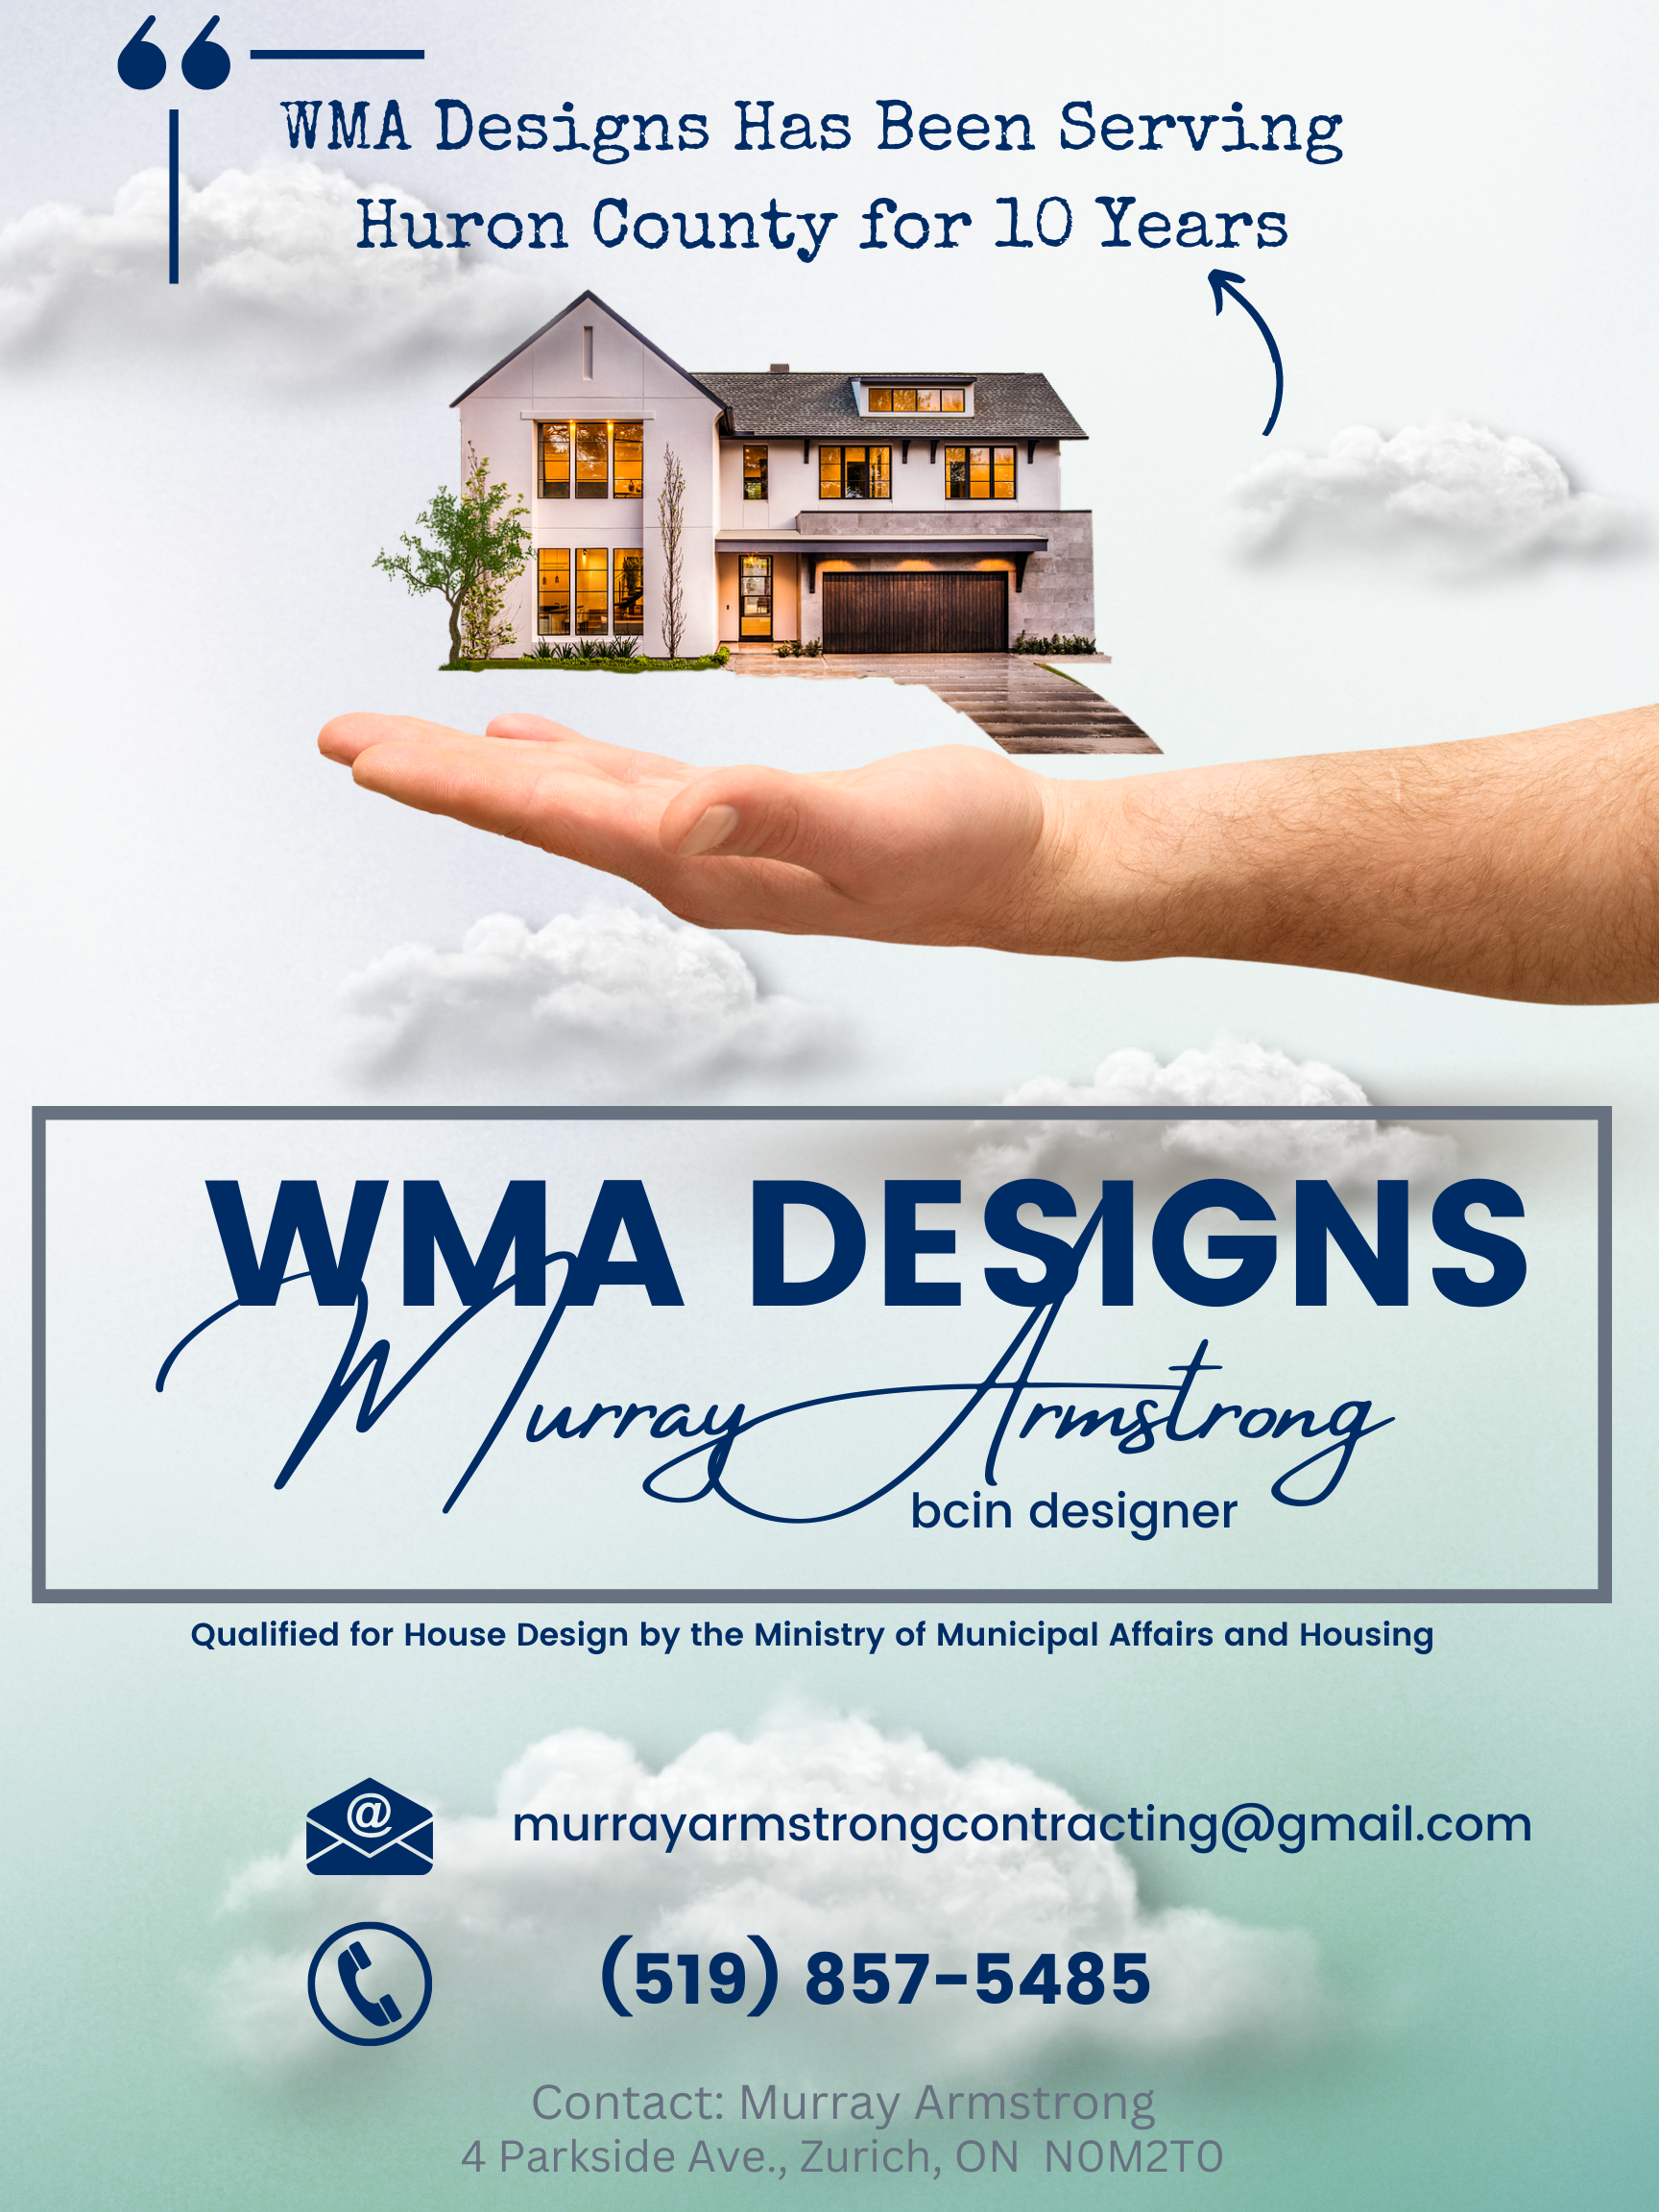 WMA Designs